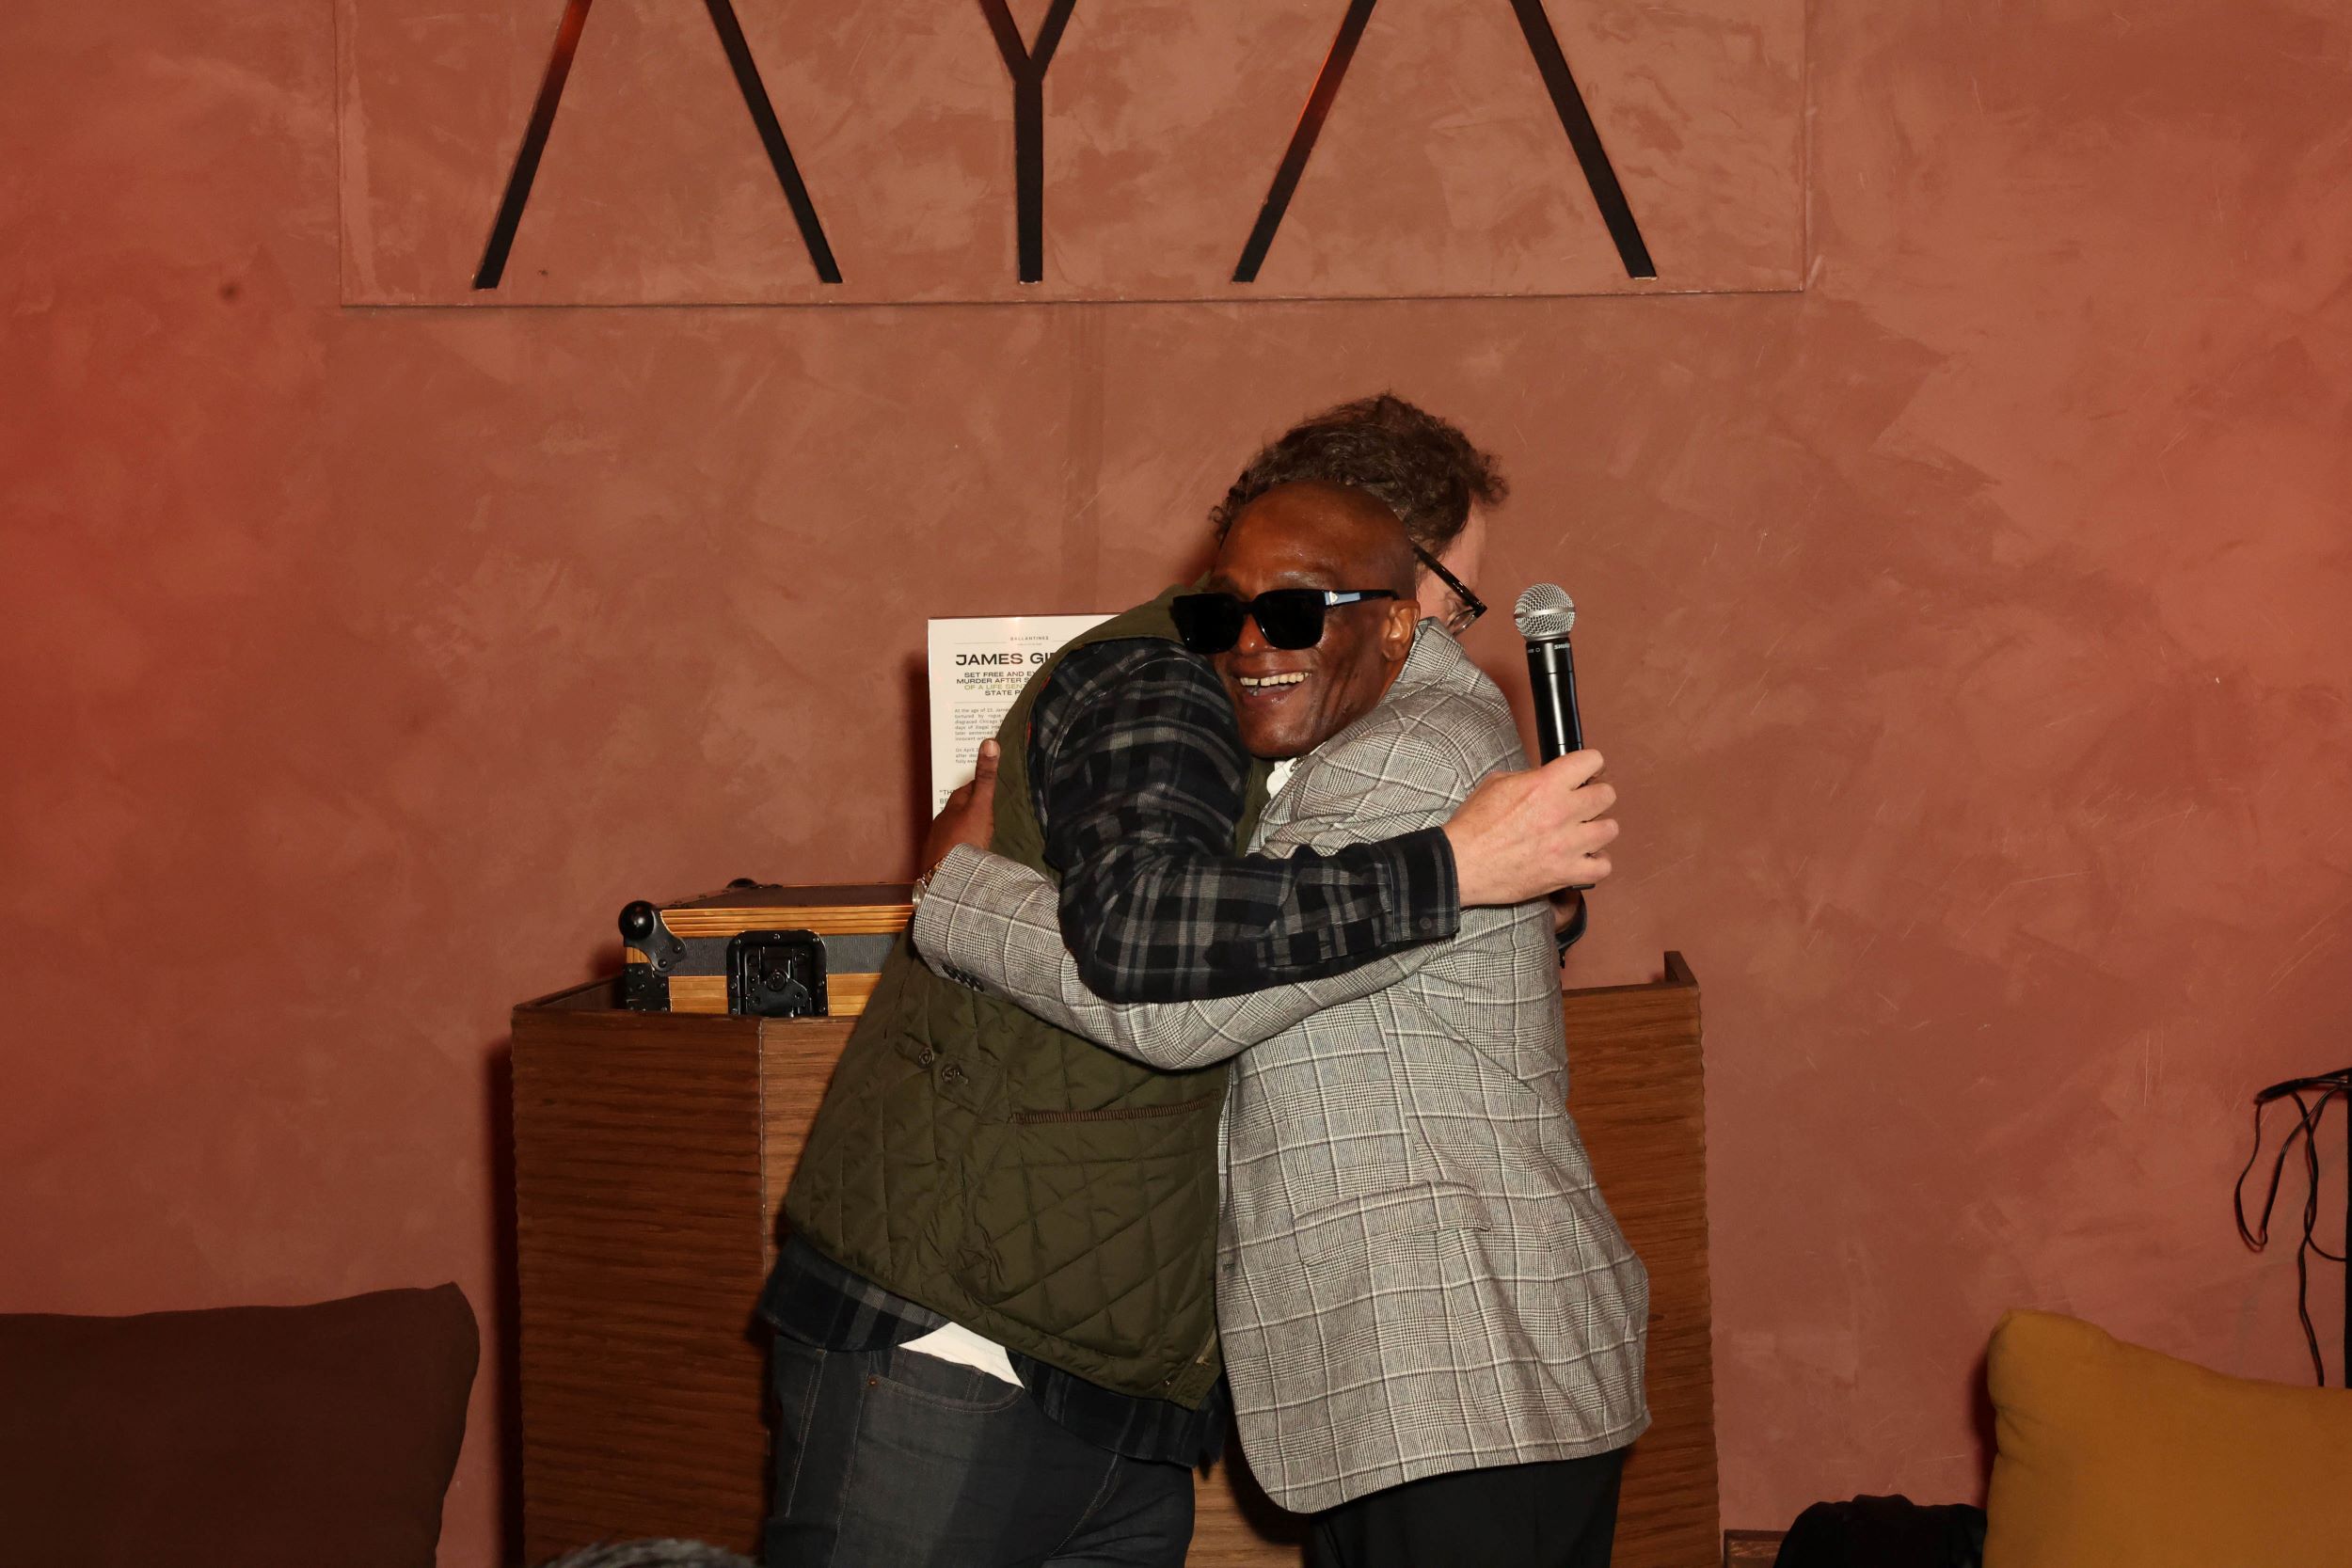 An image of Rainn Wilson and James Gibson embracing.